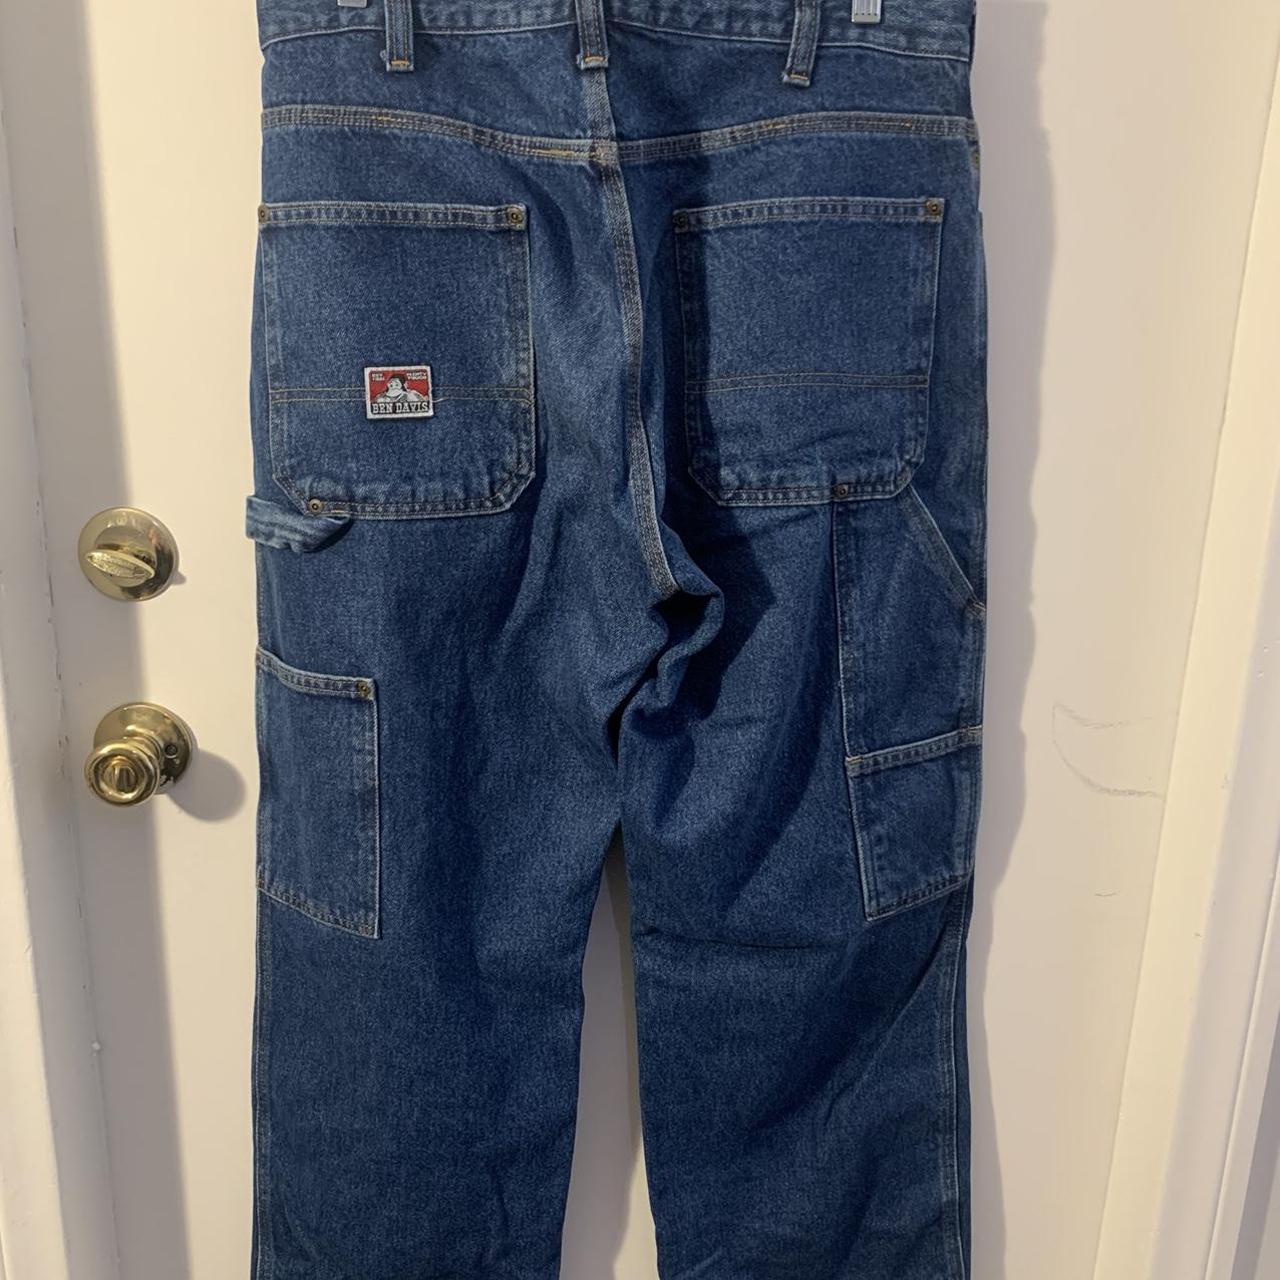 Ben Davis carpenter jeans size 34 waist and 30... - Depop